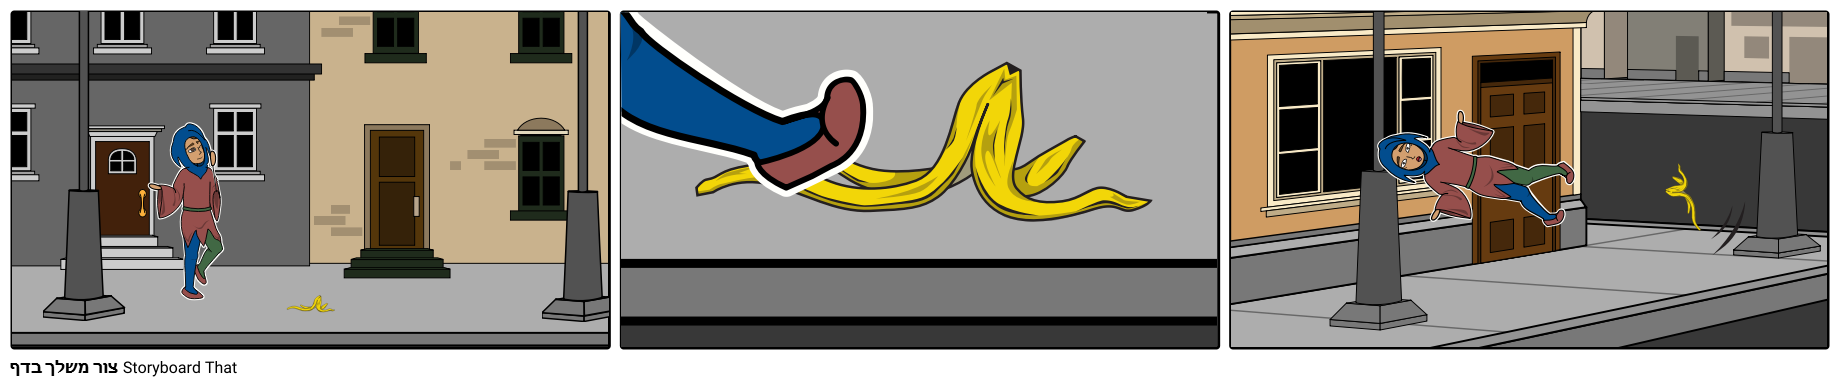 Jester מחליק על קליפת בננה